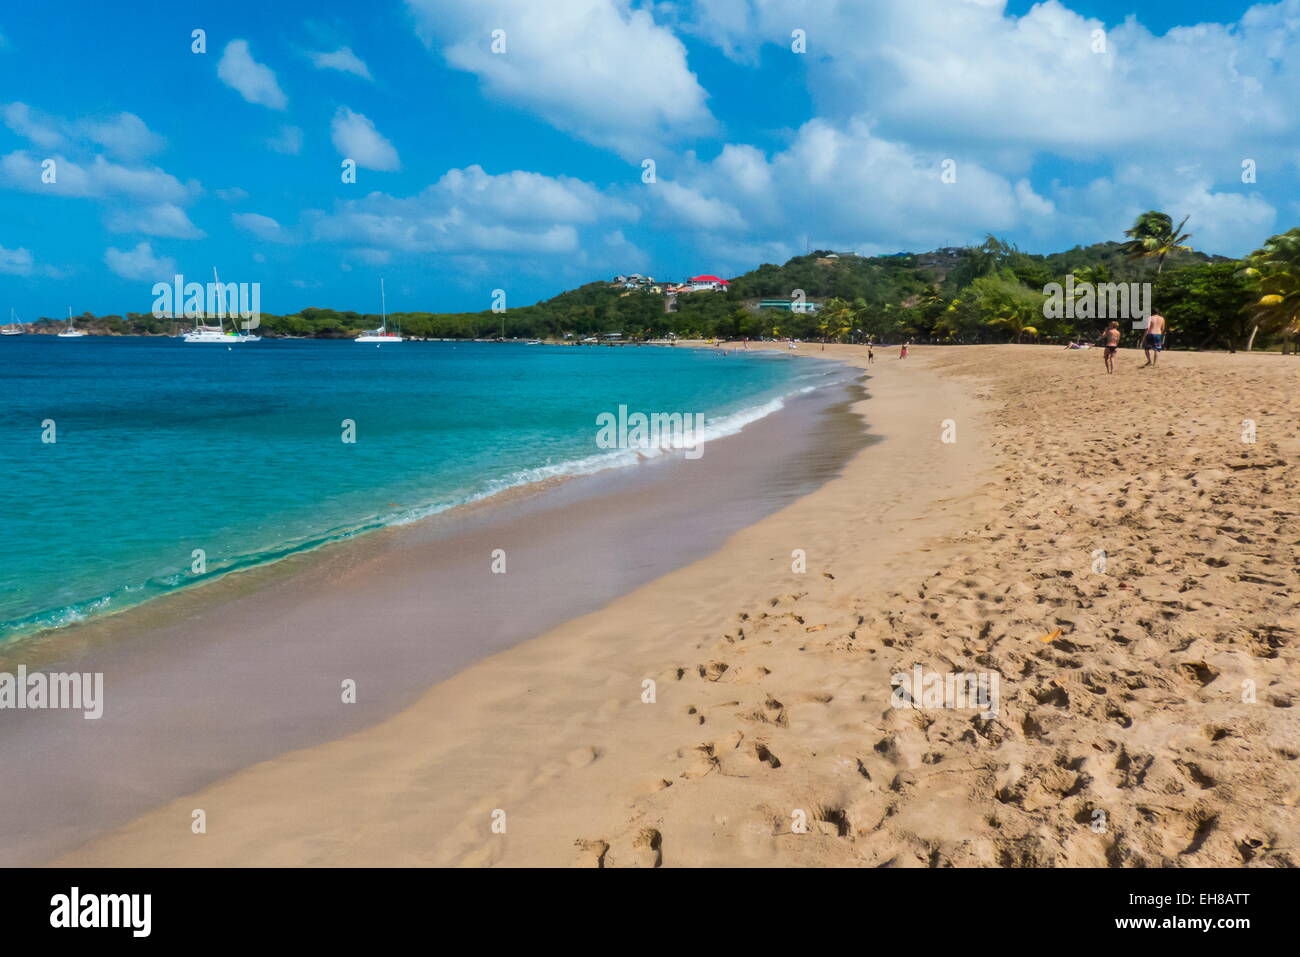 Playa de Las Salinas de la Bahía de silbato, Mayreau, Las Granadinas, las Islas de Barlovento, Antillas, Caribe Foto de stock